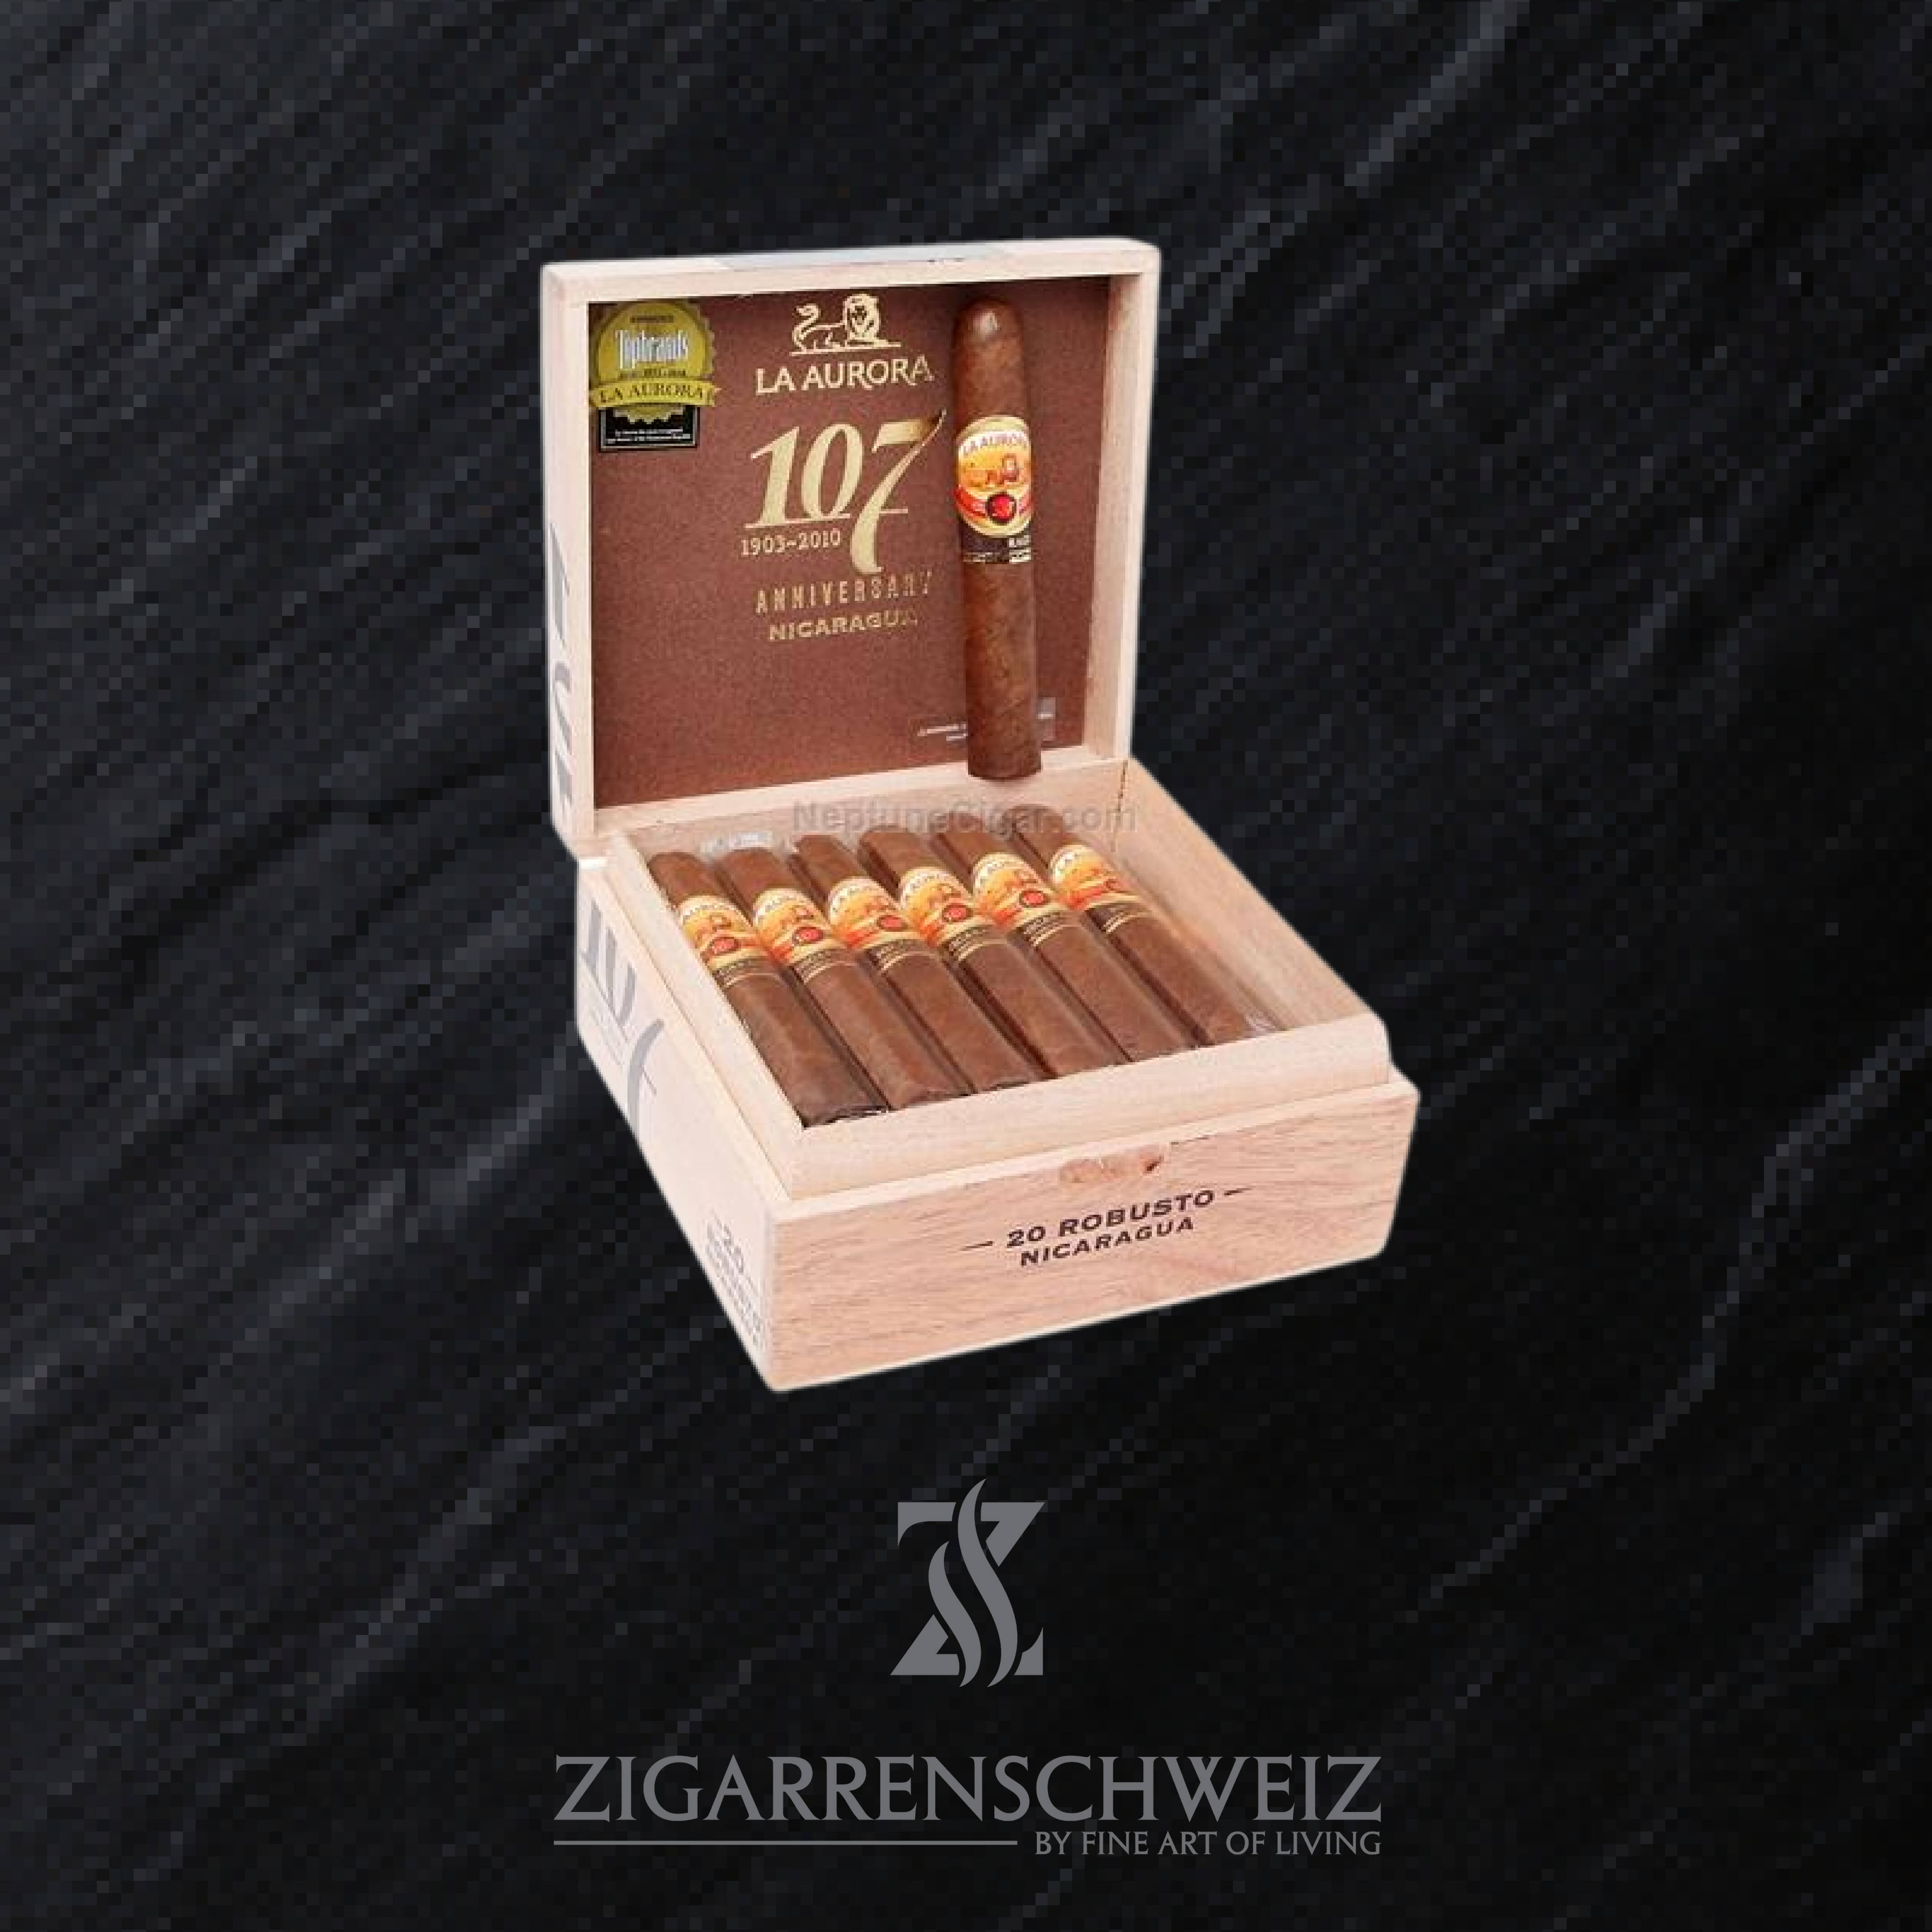 La Aurora 107 Nicaragua Robusto Zigarren Kiste geöffnet